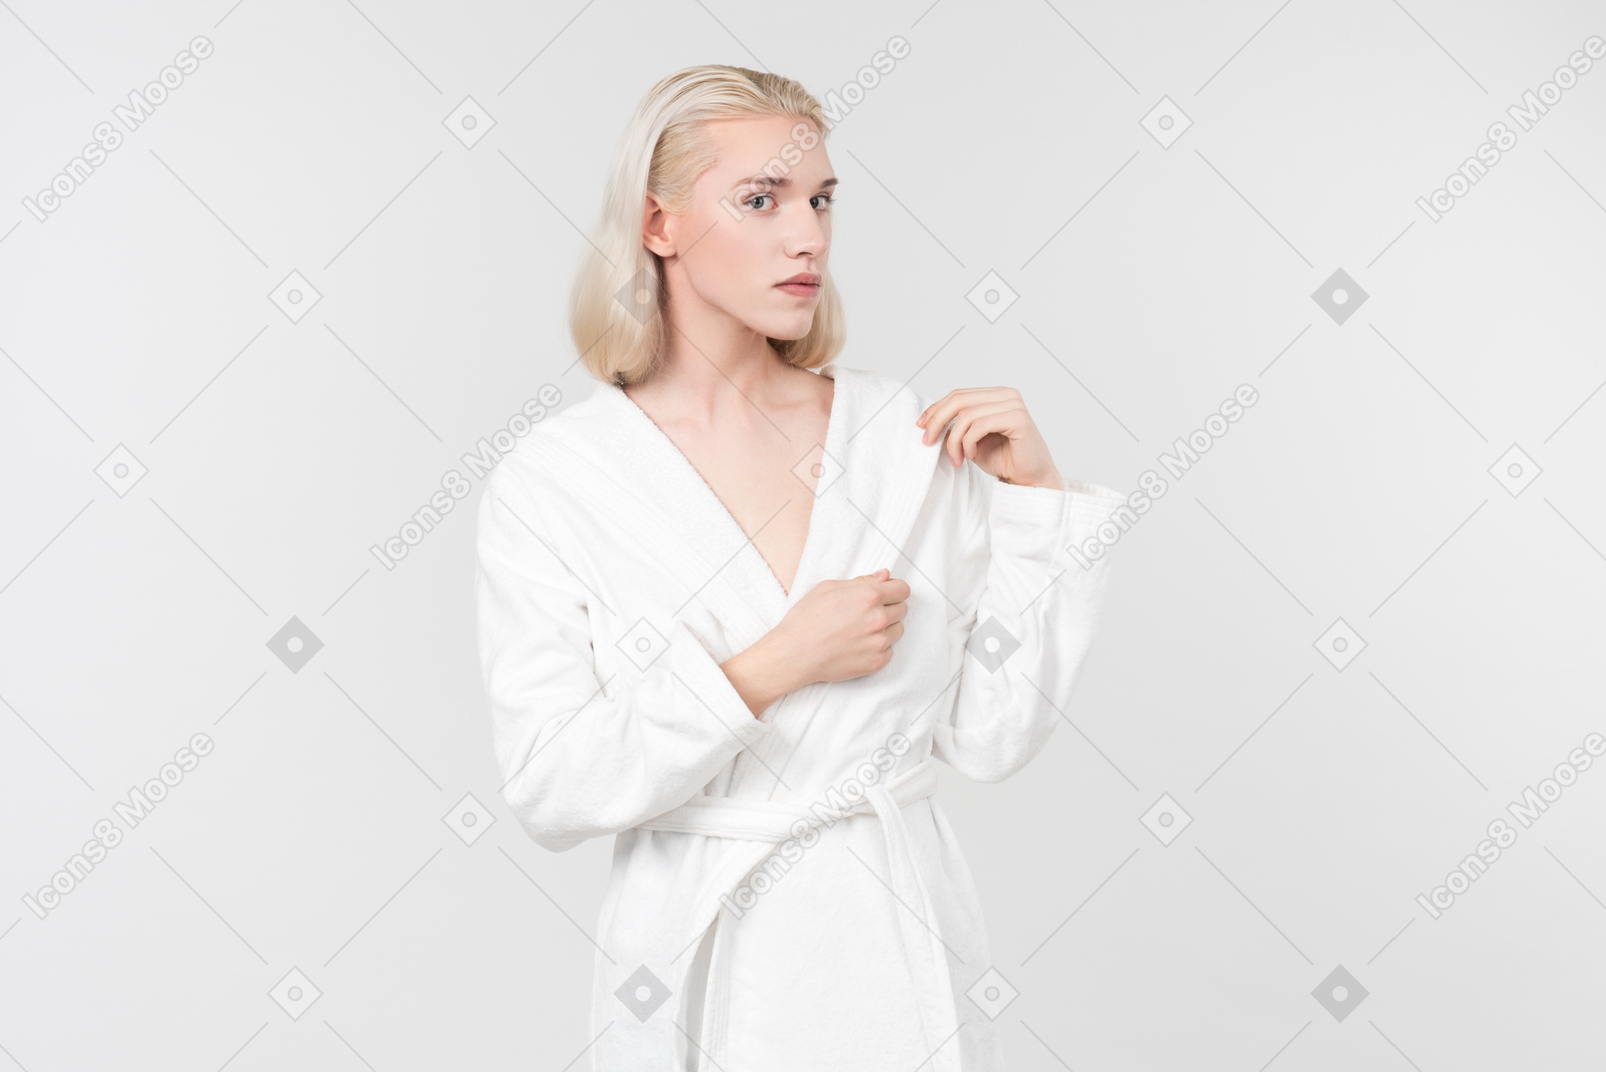 Se ho macchiato un accappatoio bianco ma la macchia è anche bianca, dovrei lavarla o aspettare prima un'altra macchia non bianca?